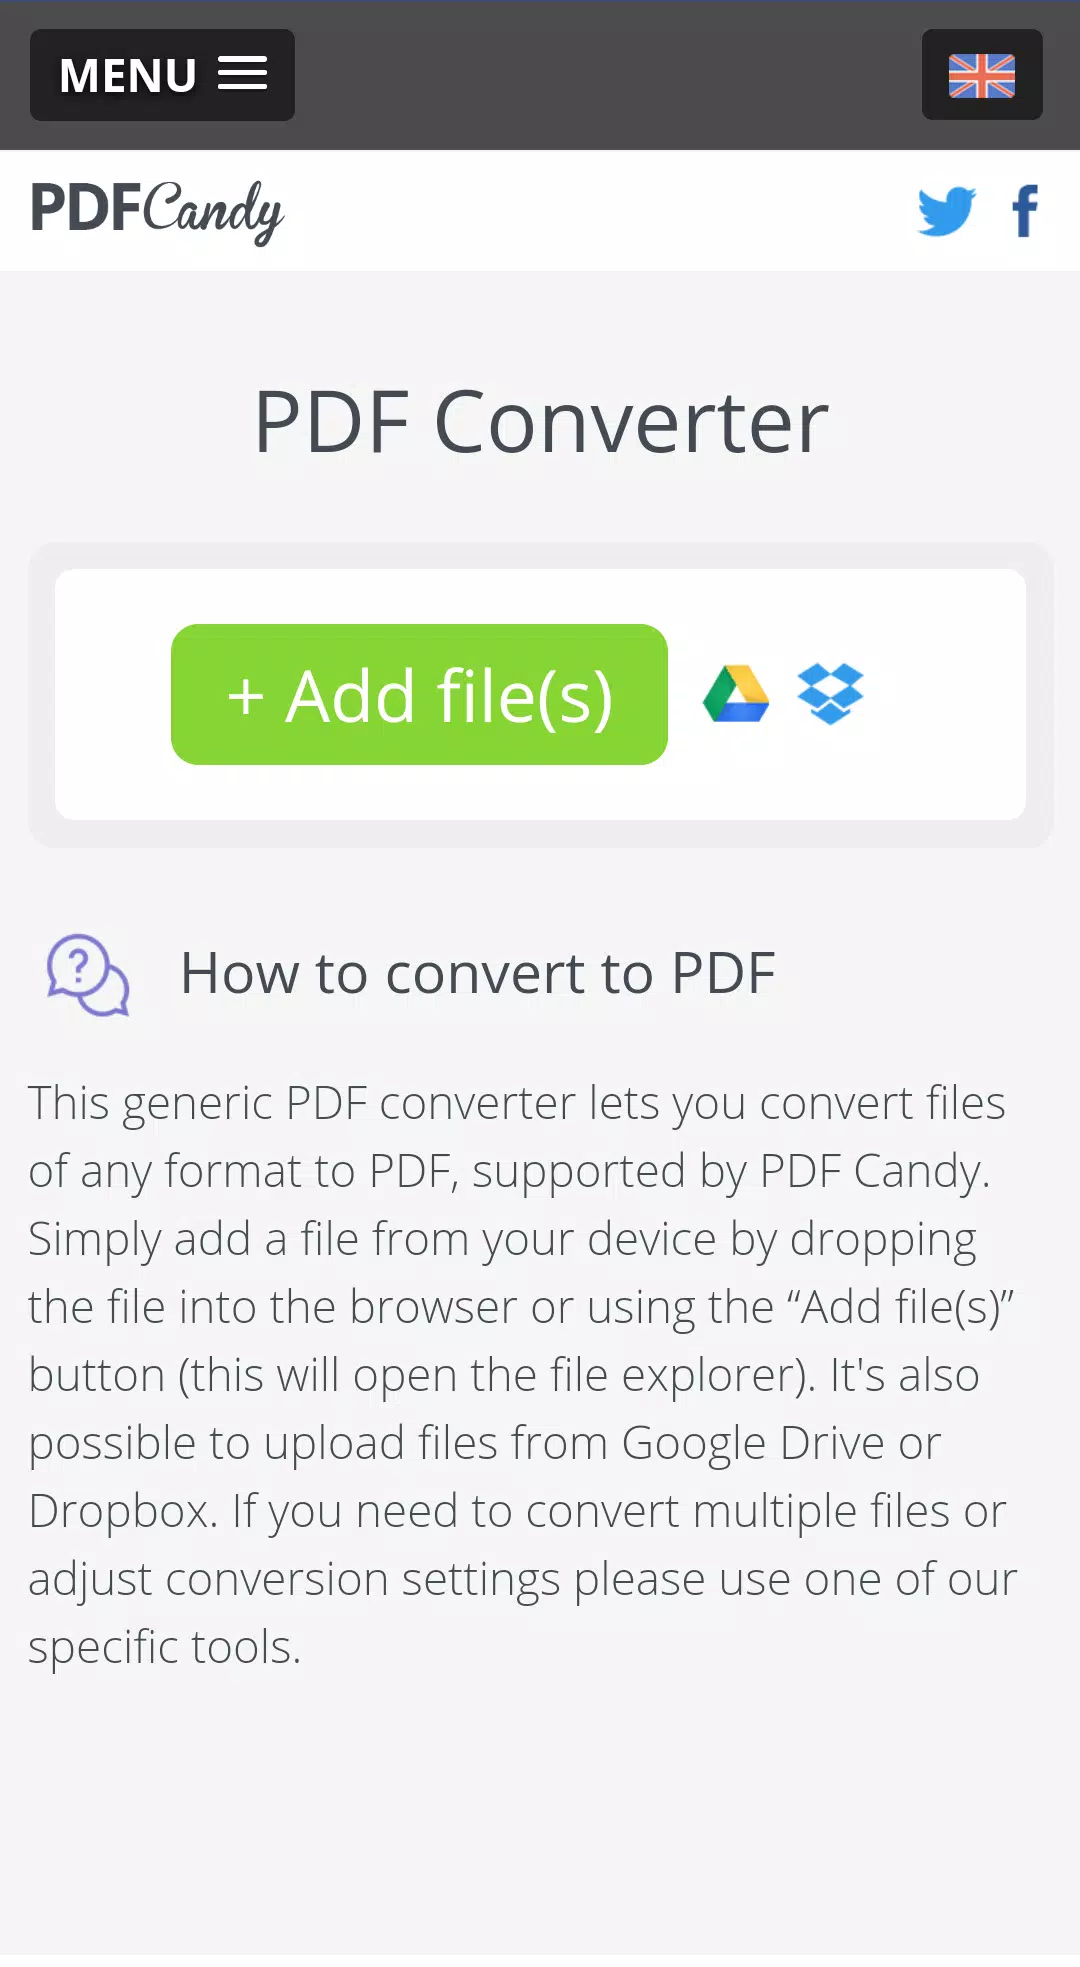 PDF CANDY APK pour Android Télécharger